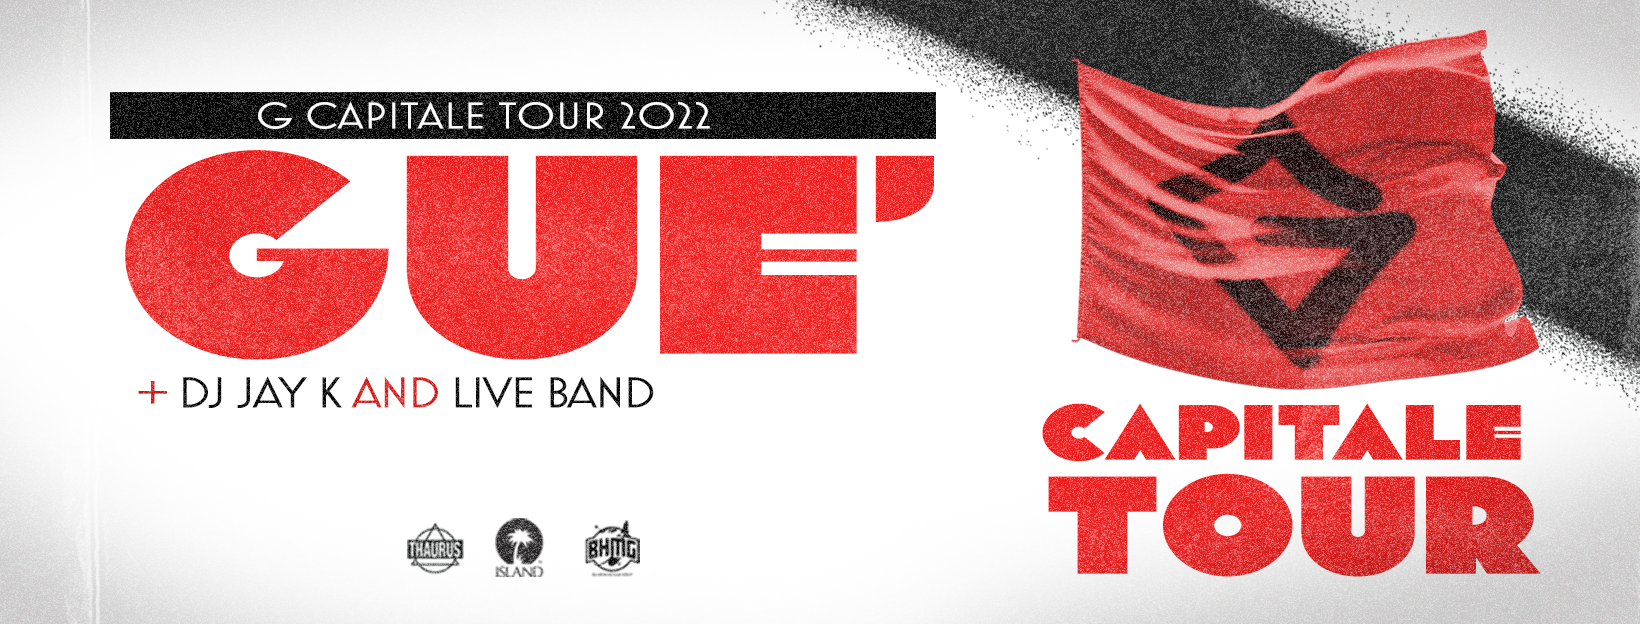 GUÈ - G CAPITALE TOUR 2022